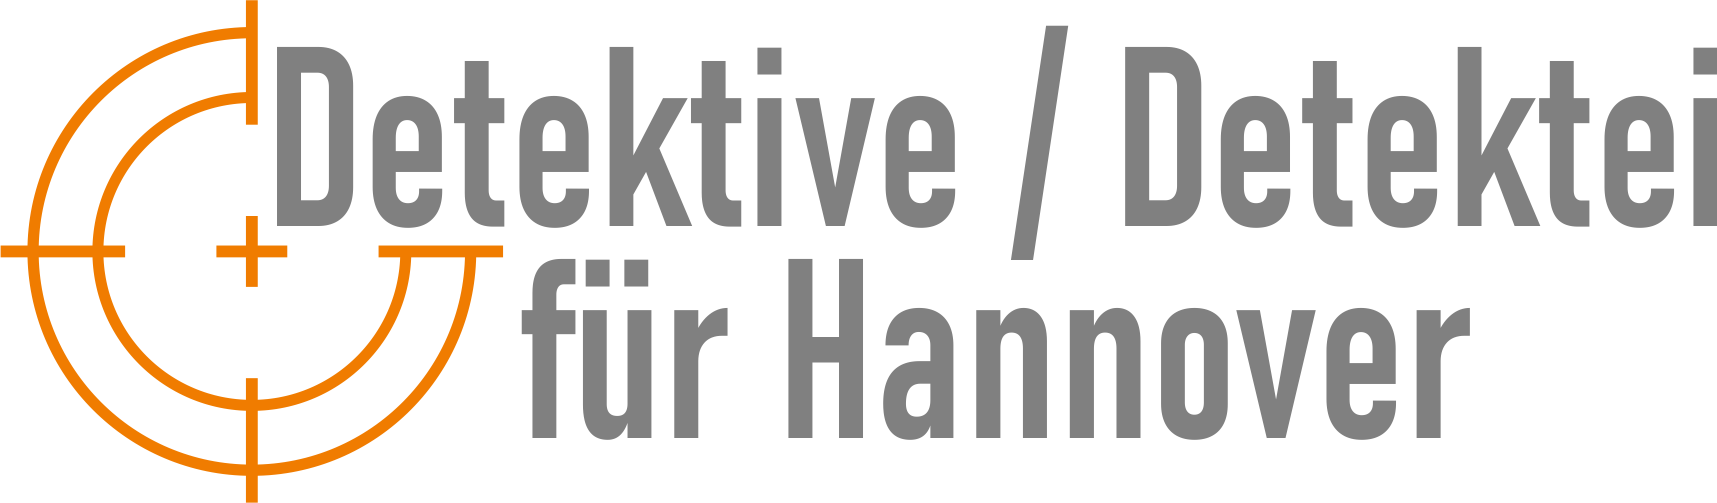 Detektive / Detektei für Hannover Logo